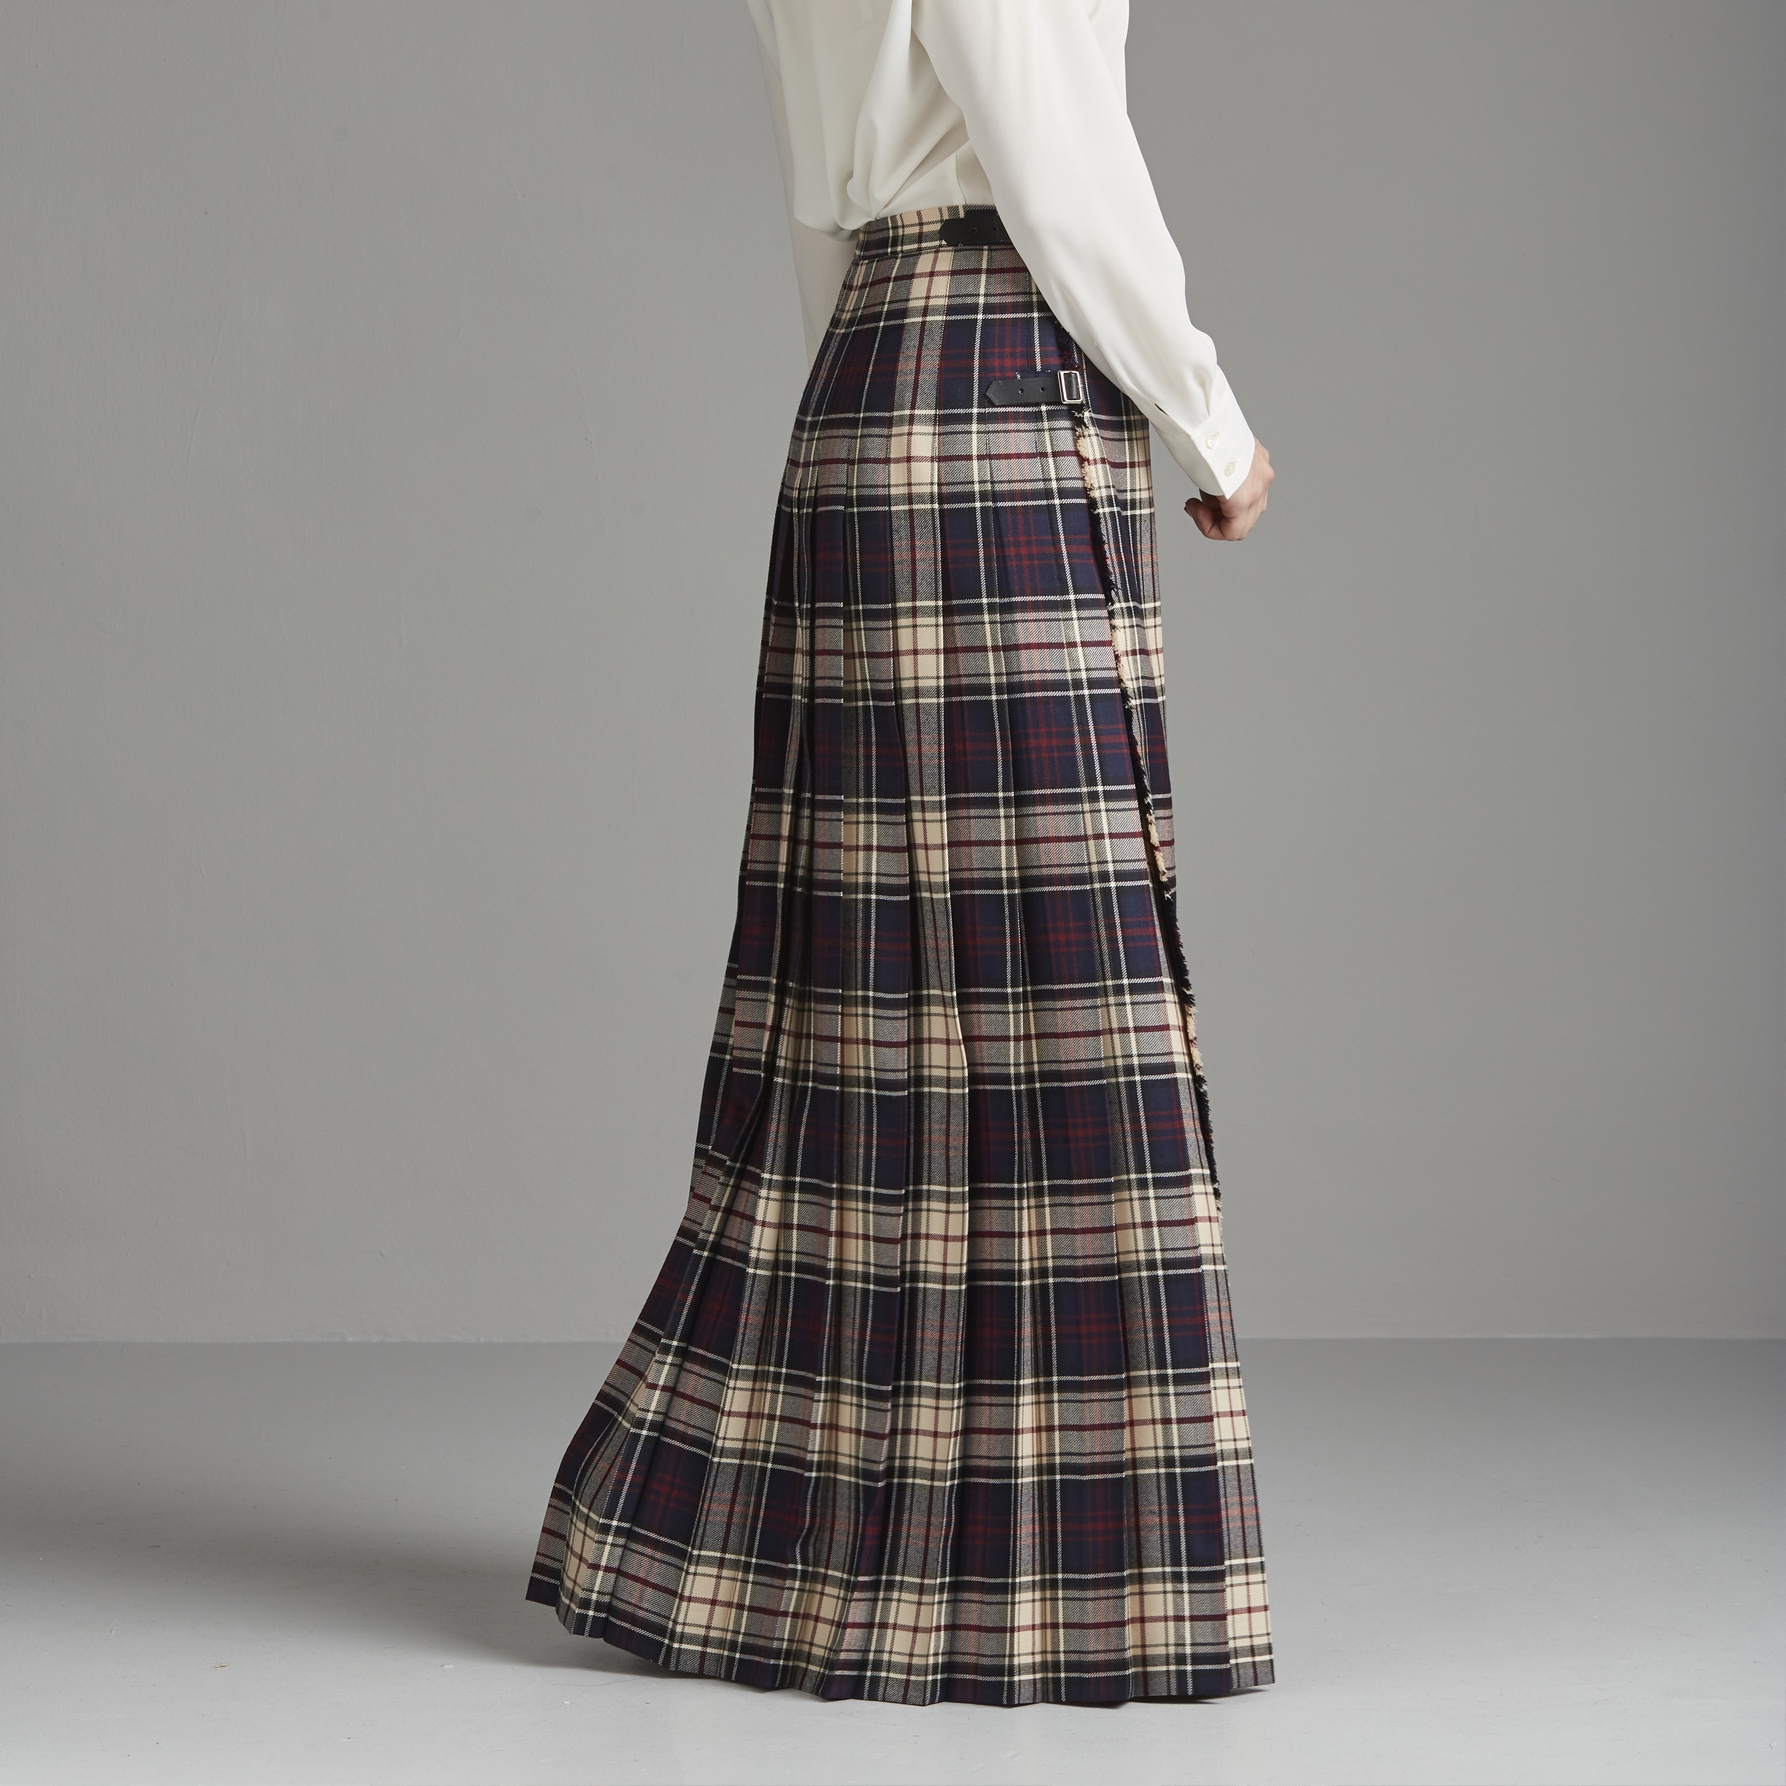 The Kinloch Anderson Dress Tartan